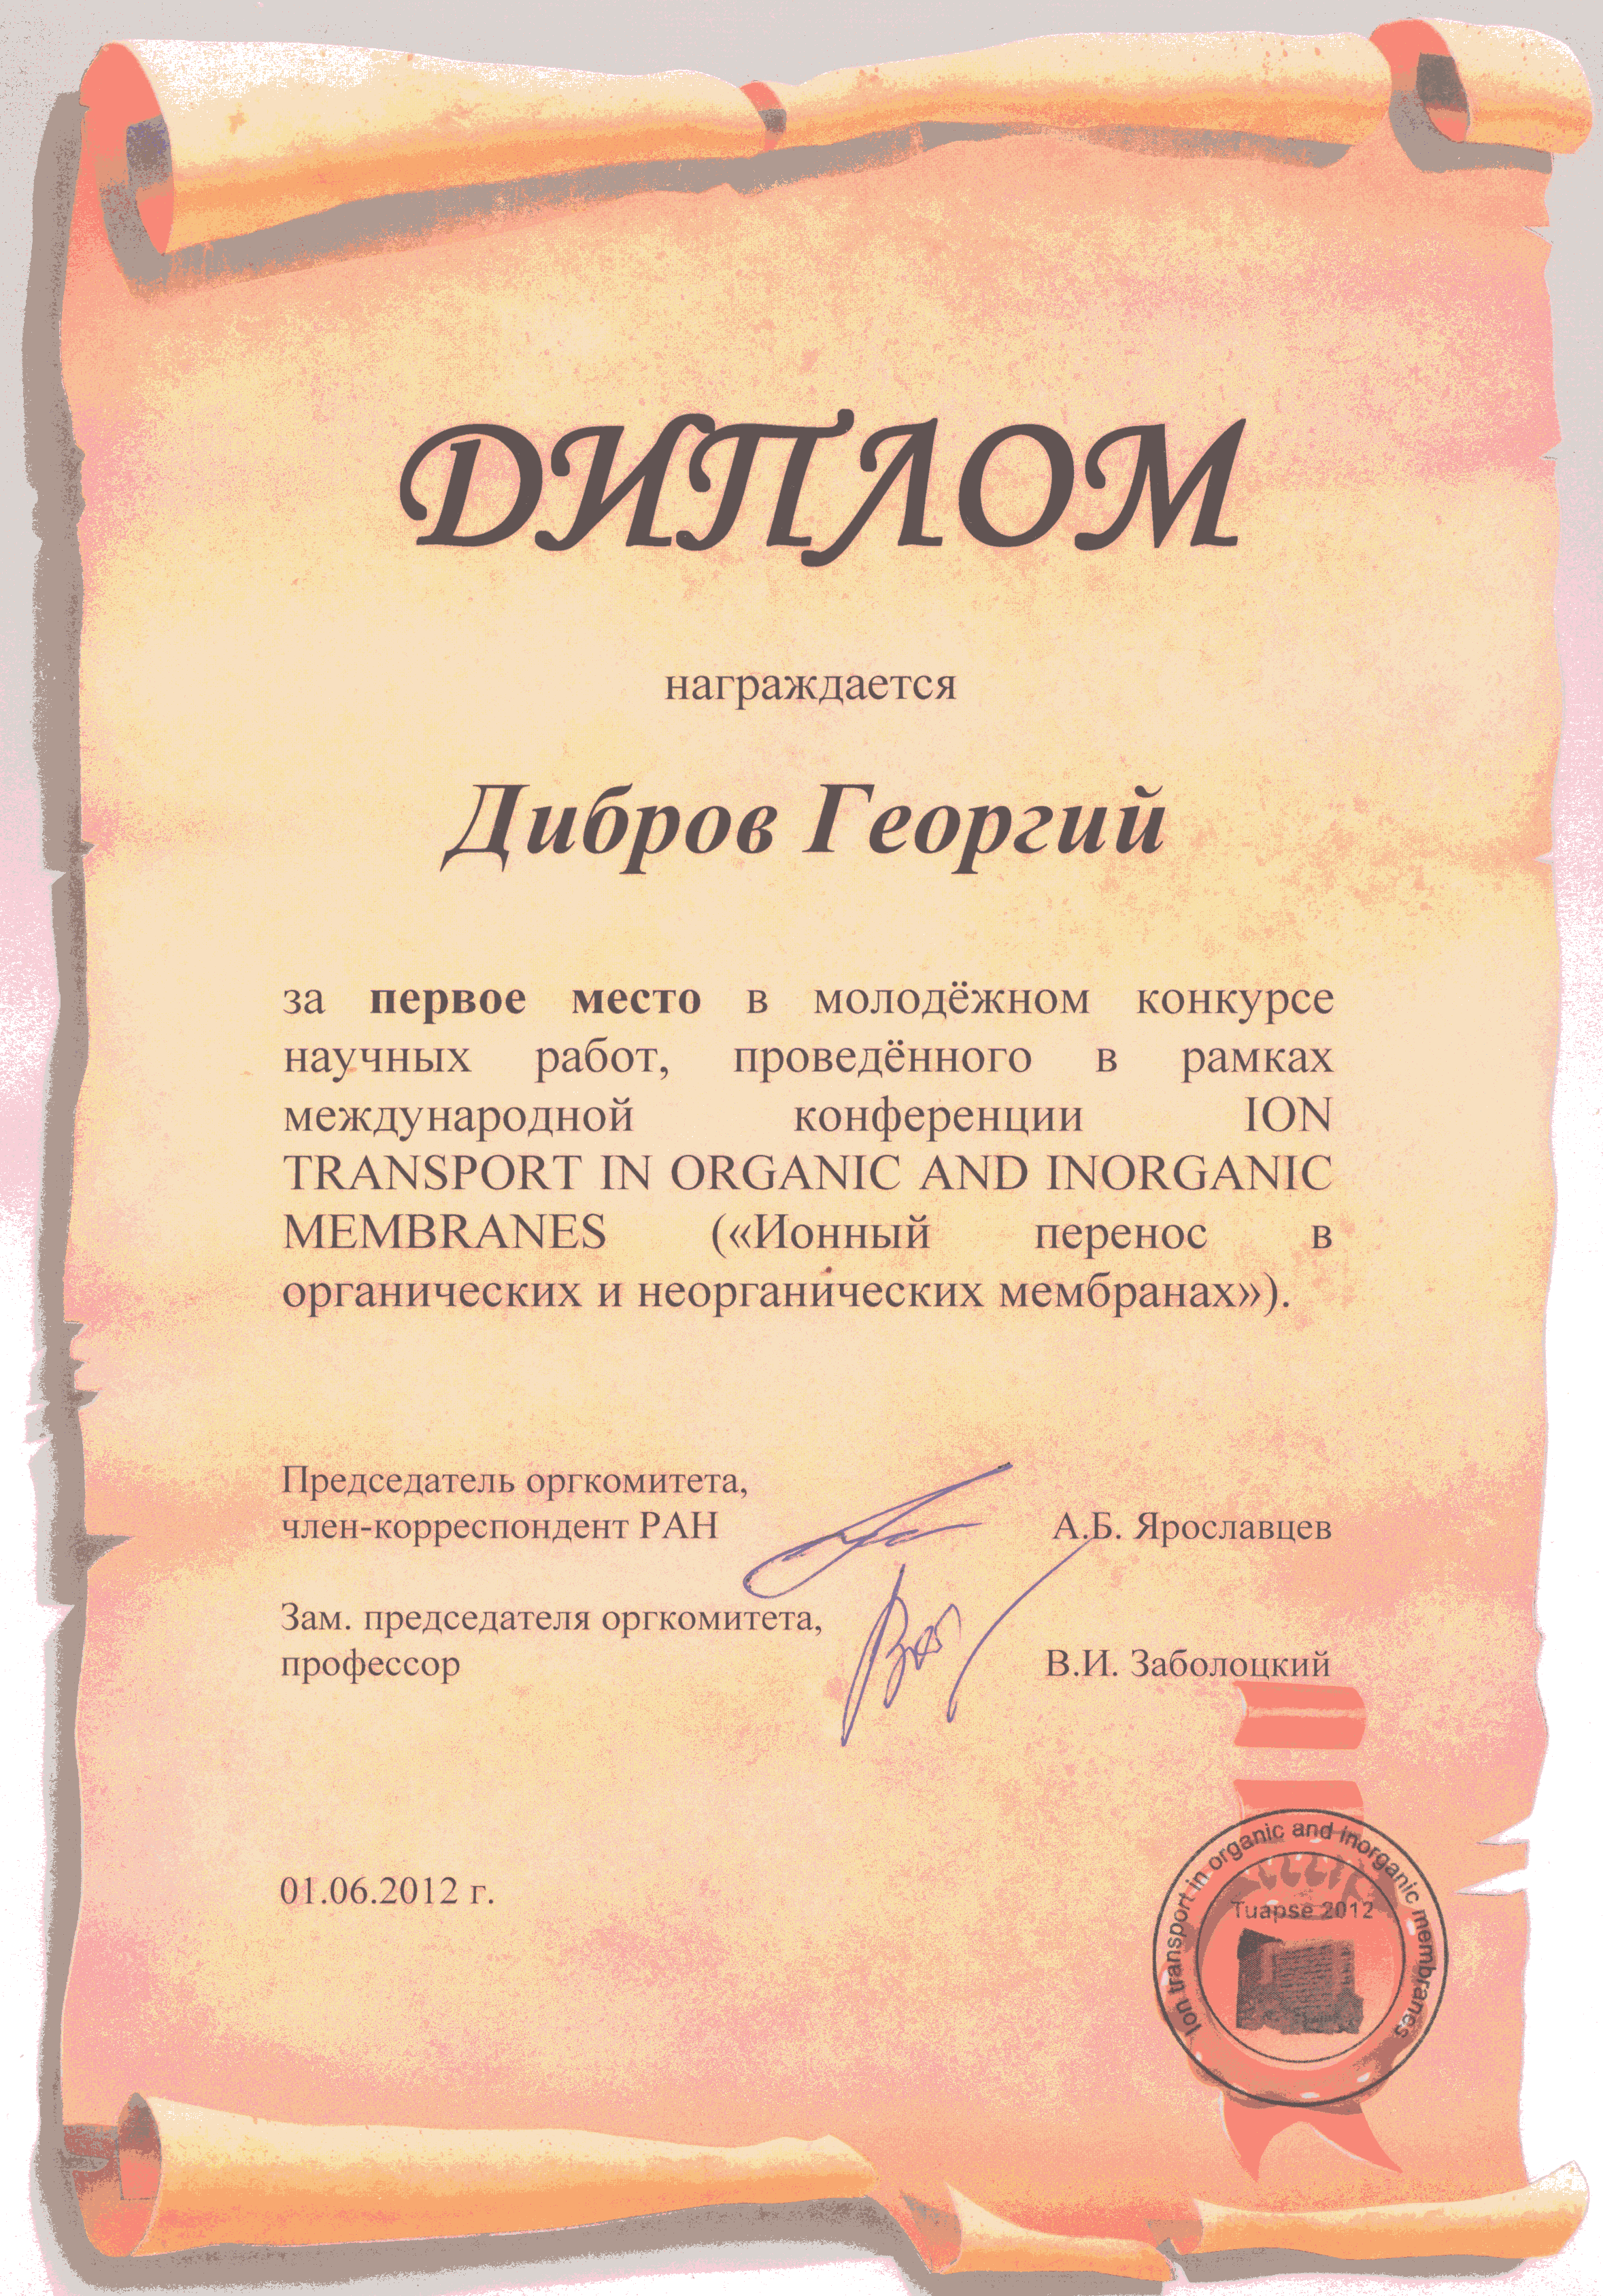 Диплом Диброву Г.А. за доклад на 38-ой Международной конференции «Ионный перенос в органических и неорганических мембранах»